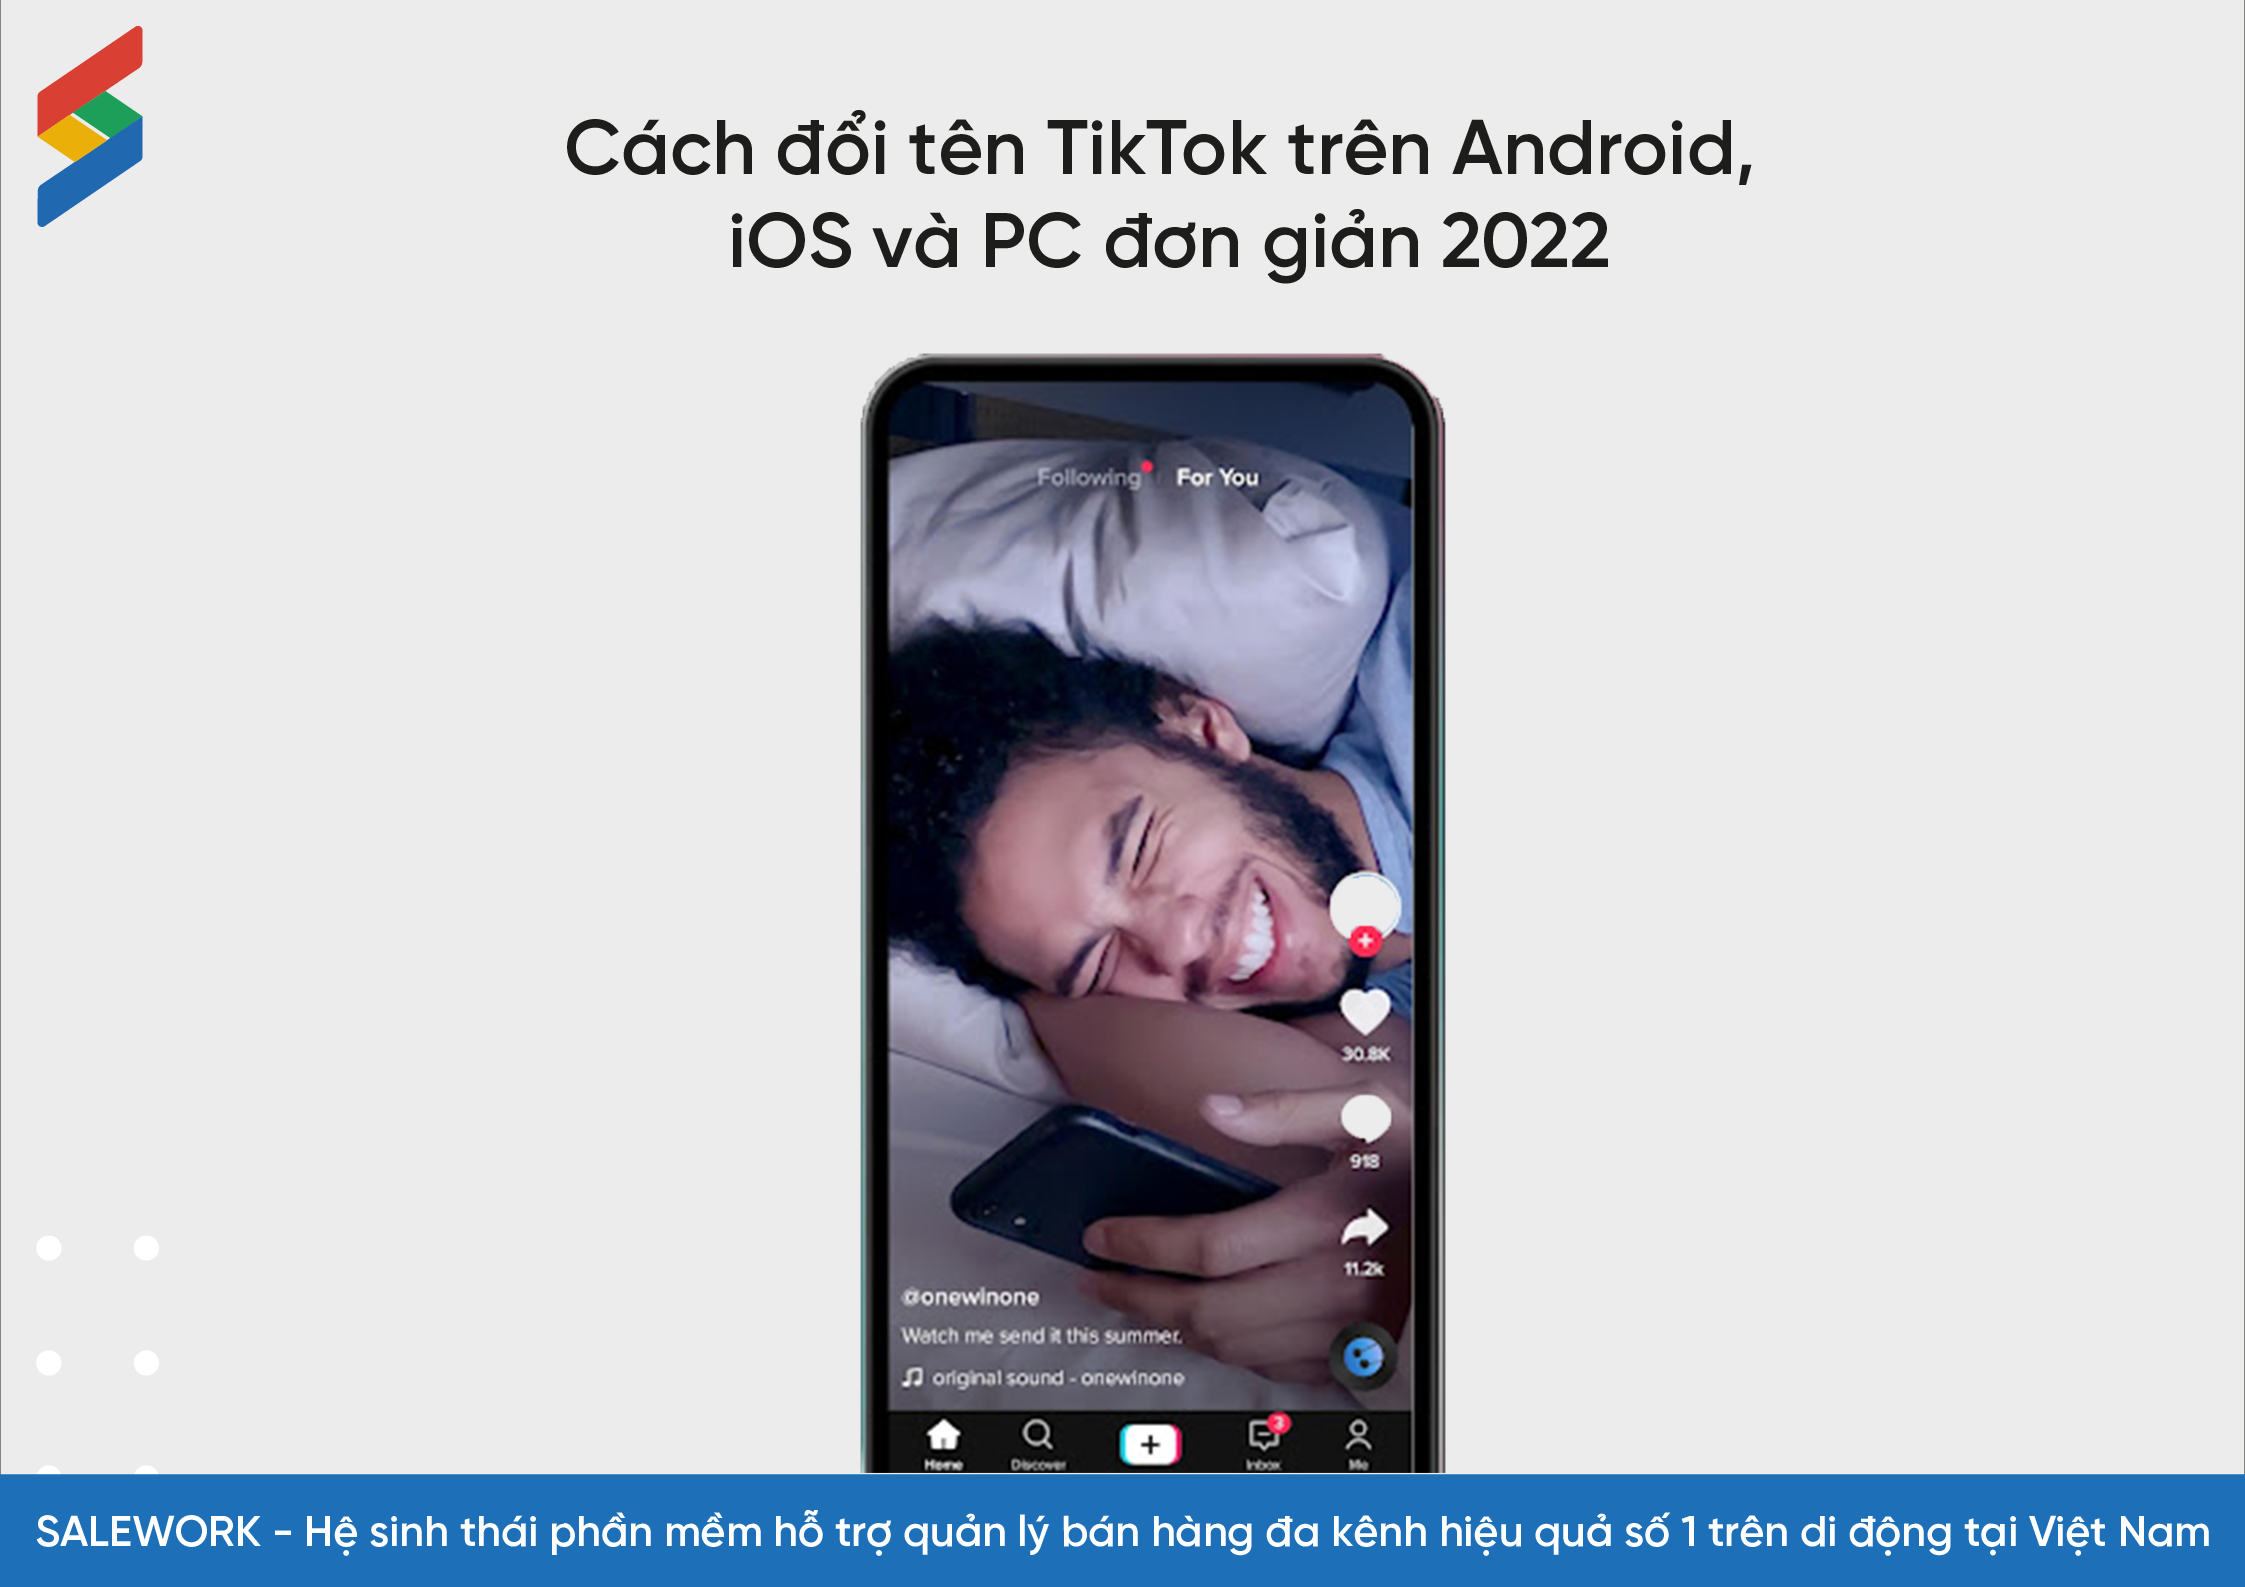 Cách đổi tên TikTok trên Android, iOS và PC đơn giản dễ thực hiện - 10